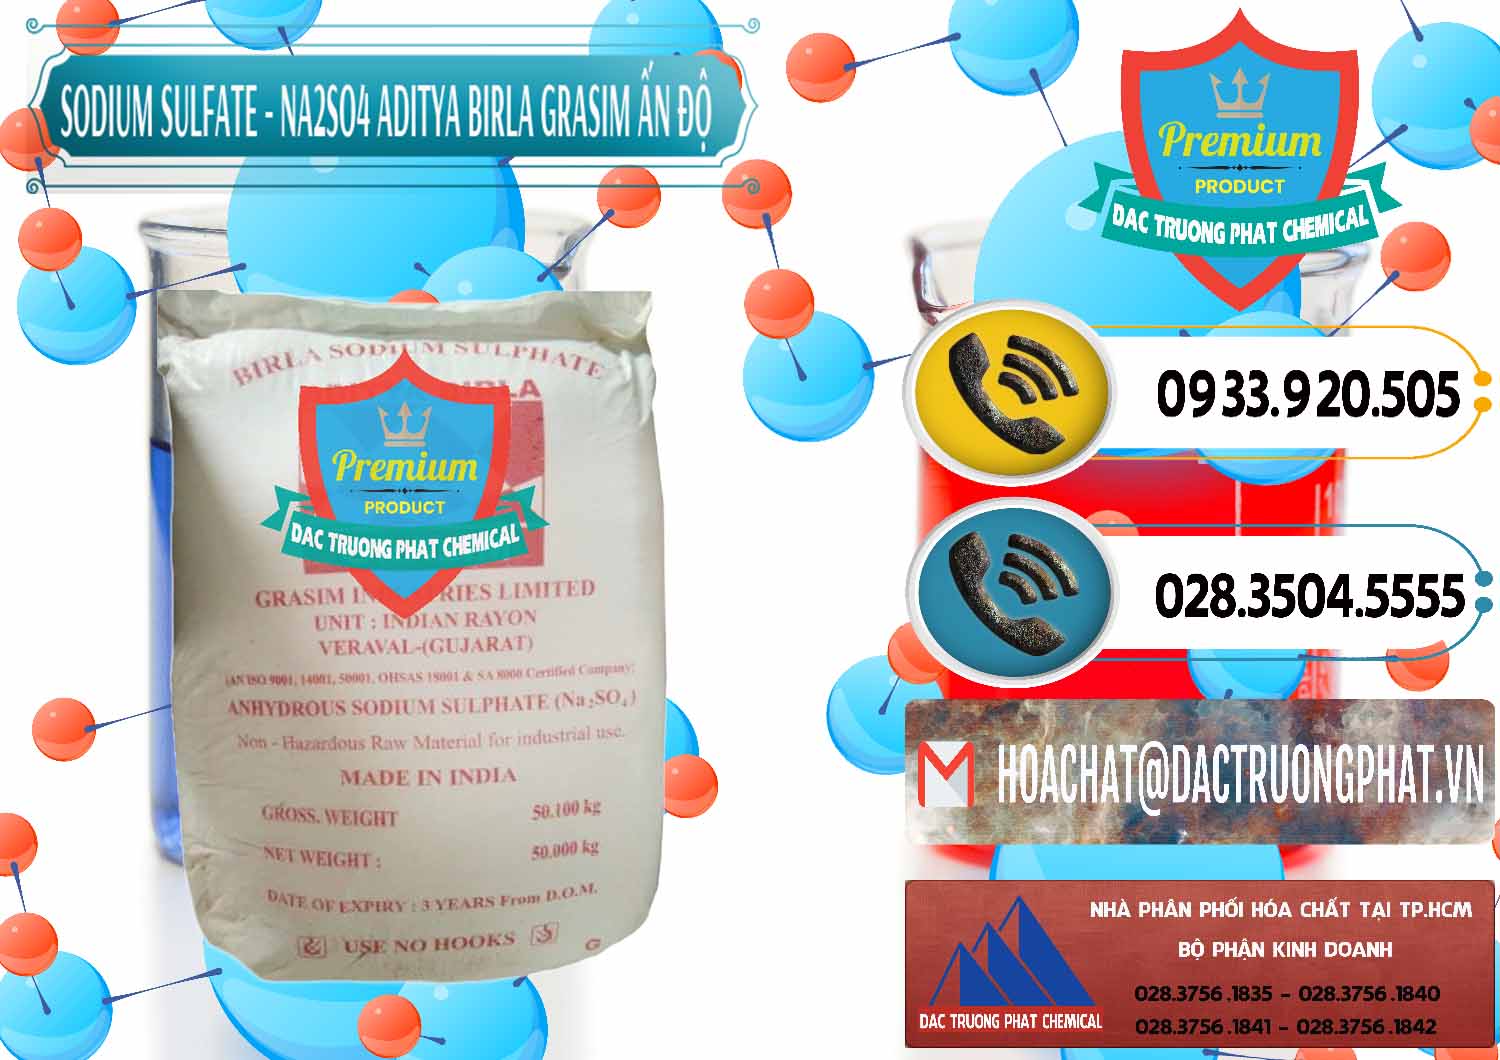 Công ty bán và cung cấp Sodium Sulphate - Muối Sunfat Na2SO4 Grasim Ấn Độ India - 0356 - Công ty chuyên nhập khẩu - cung cấp hóa chất tại TP.HCM - hoachatdetnhuom.vn